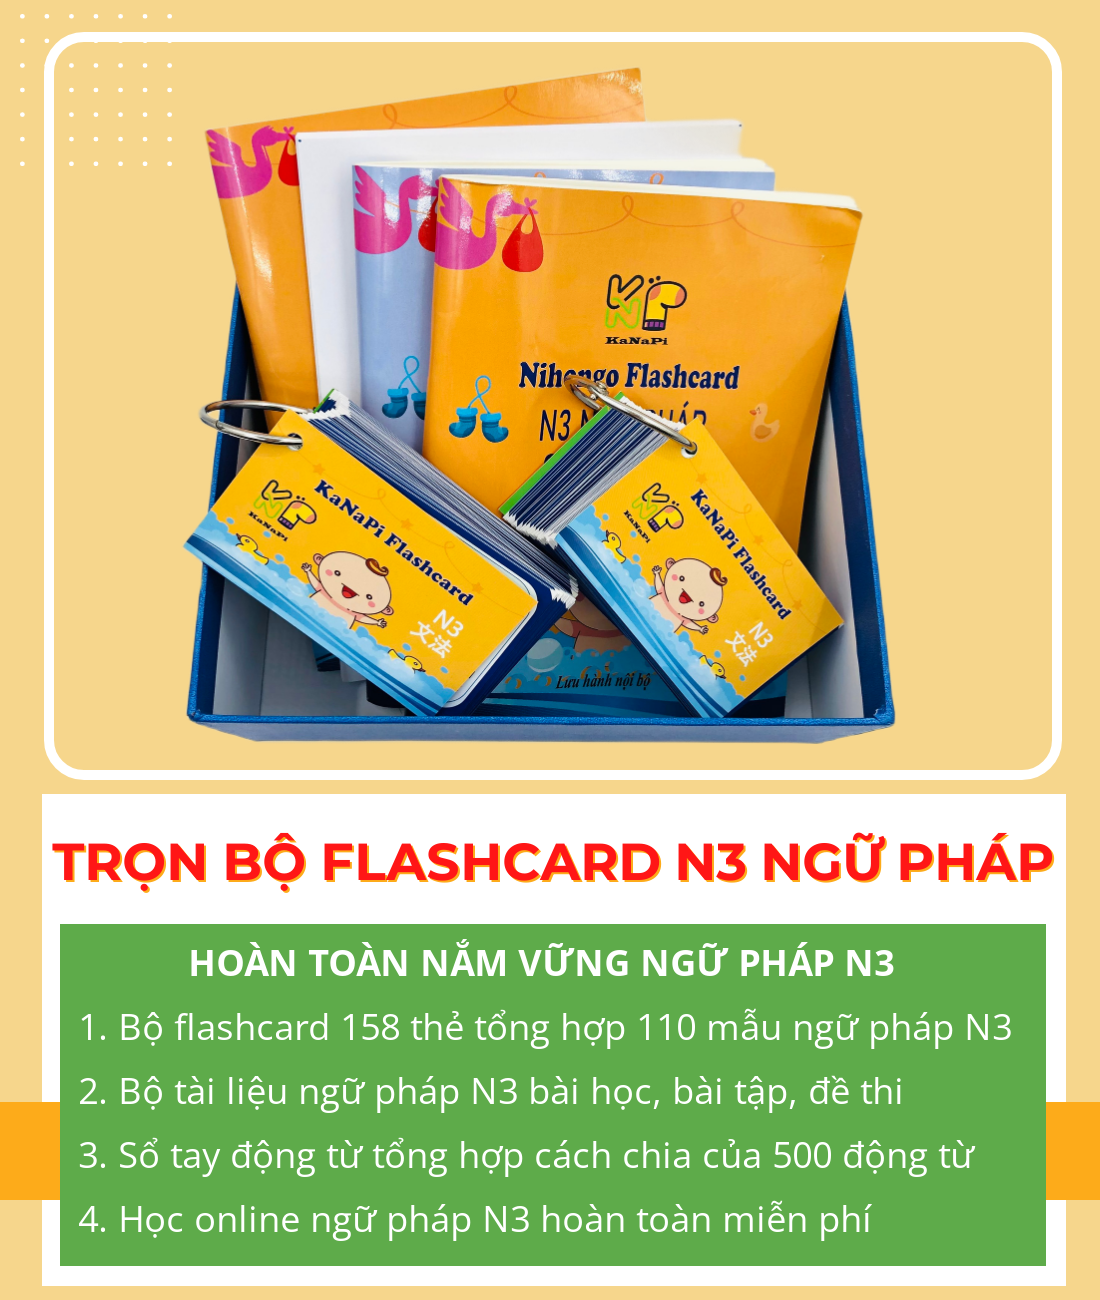 Trọn Bộ Flashcards N3 Ngữ Pháp (Thẻ flashcard + Bộ sổ tay ngữ pháp N3 + Sổ tay động từ + Học Online) – Kanapi Flashcard